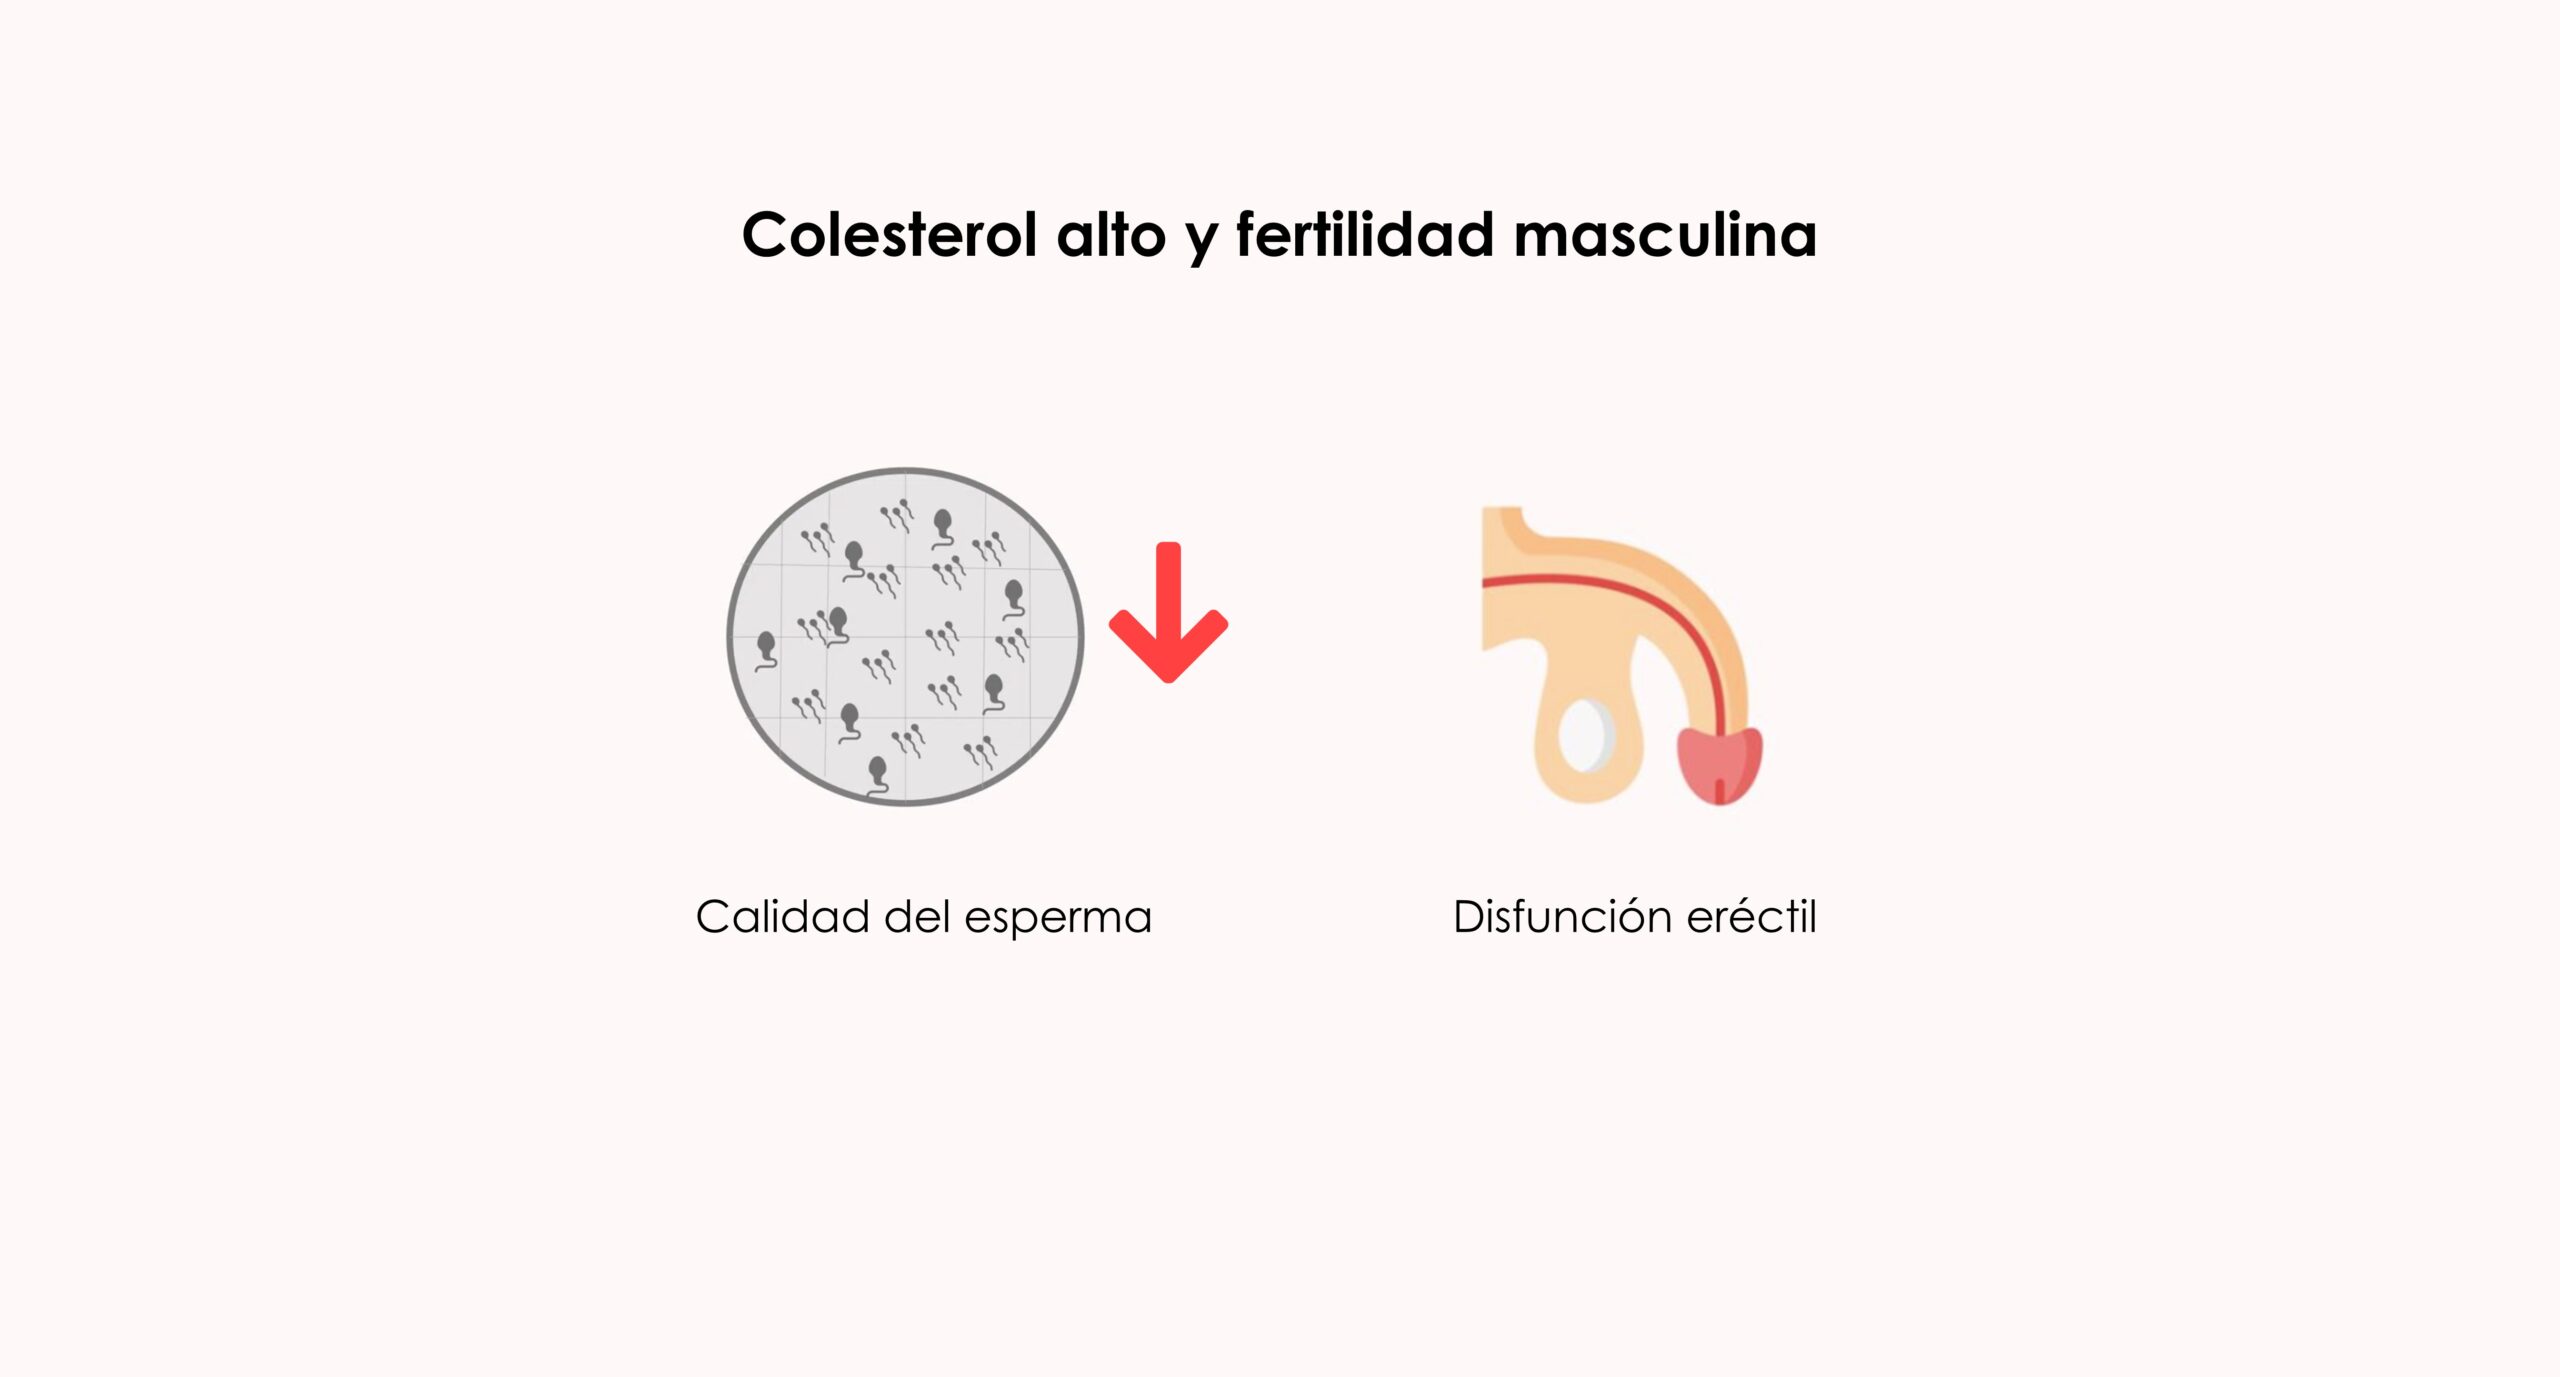 Colesterol alto y fertilidad masculina